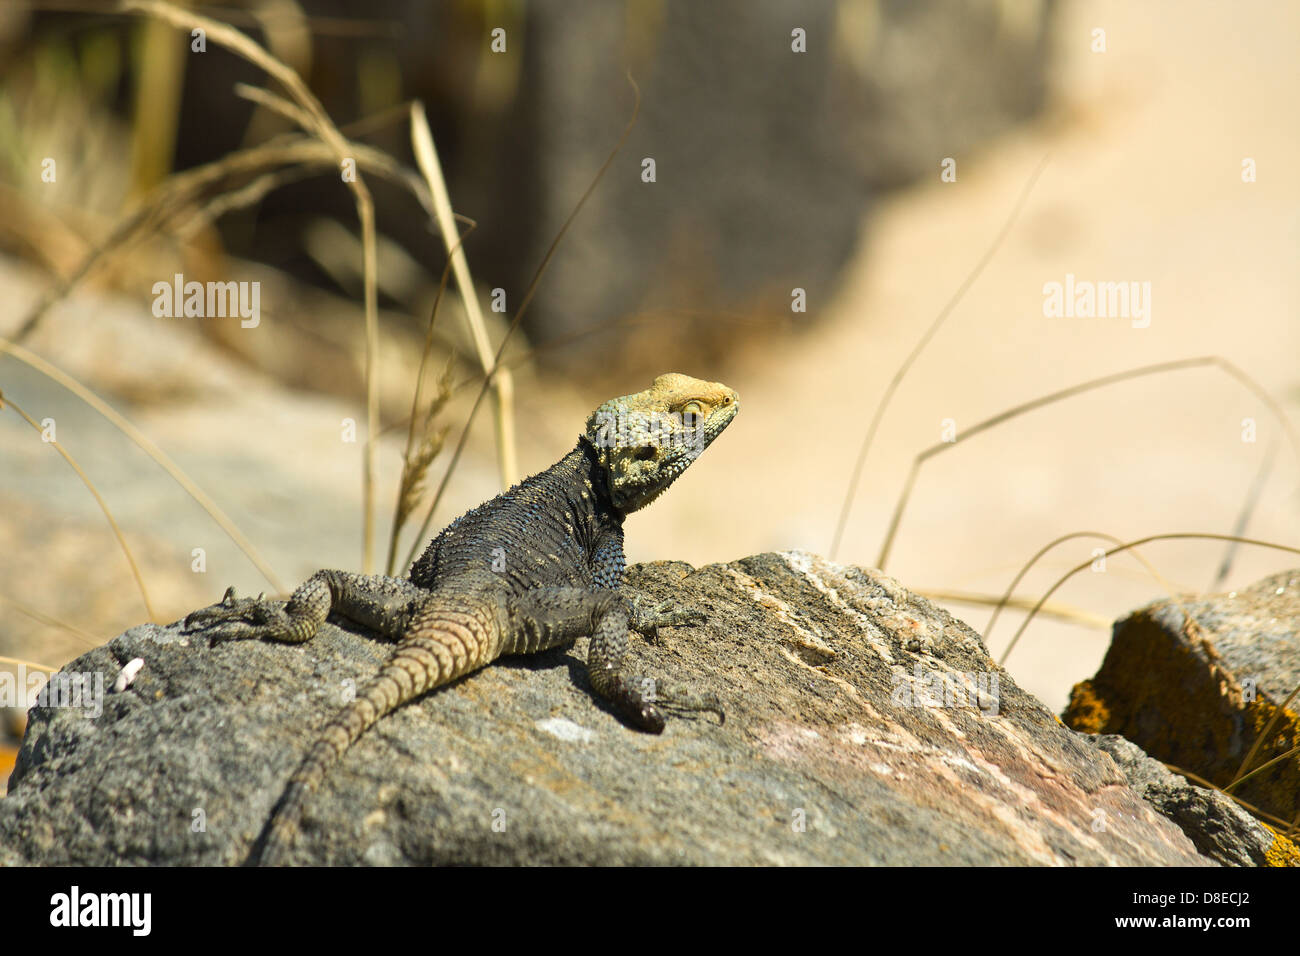 Laudakia stellio étoilé (Agama lizard) sur un rocher à l'île de Délos en Grèce Banque D'Images